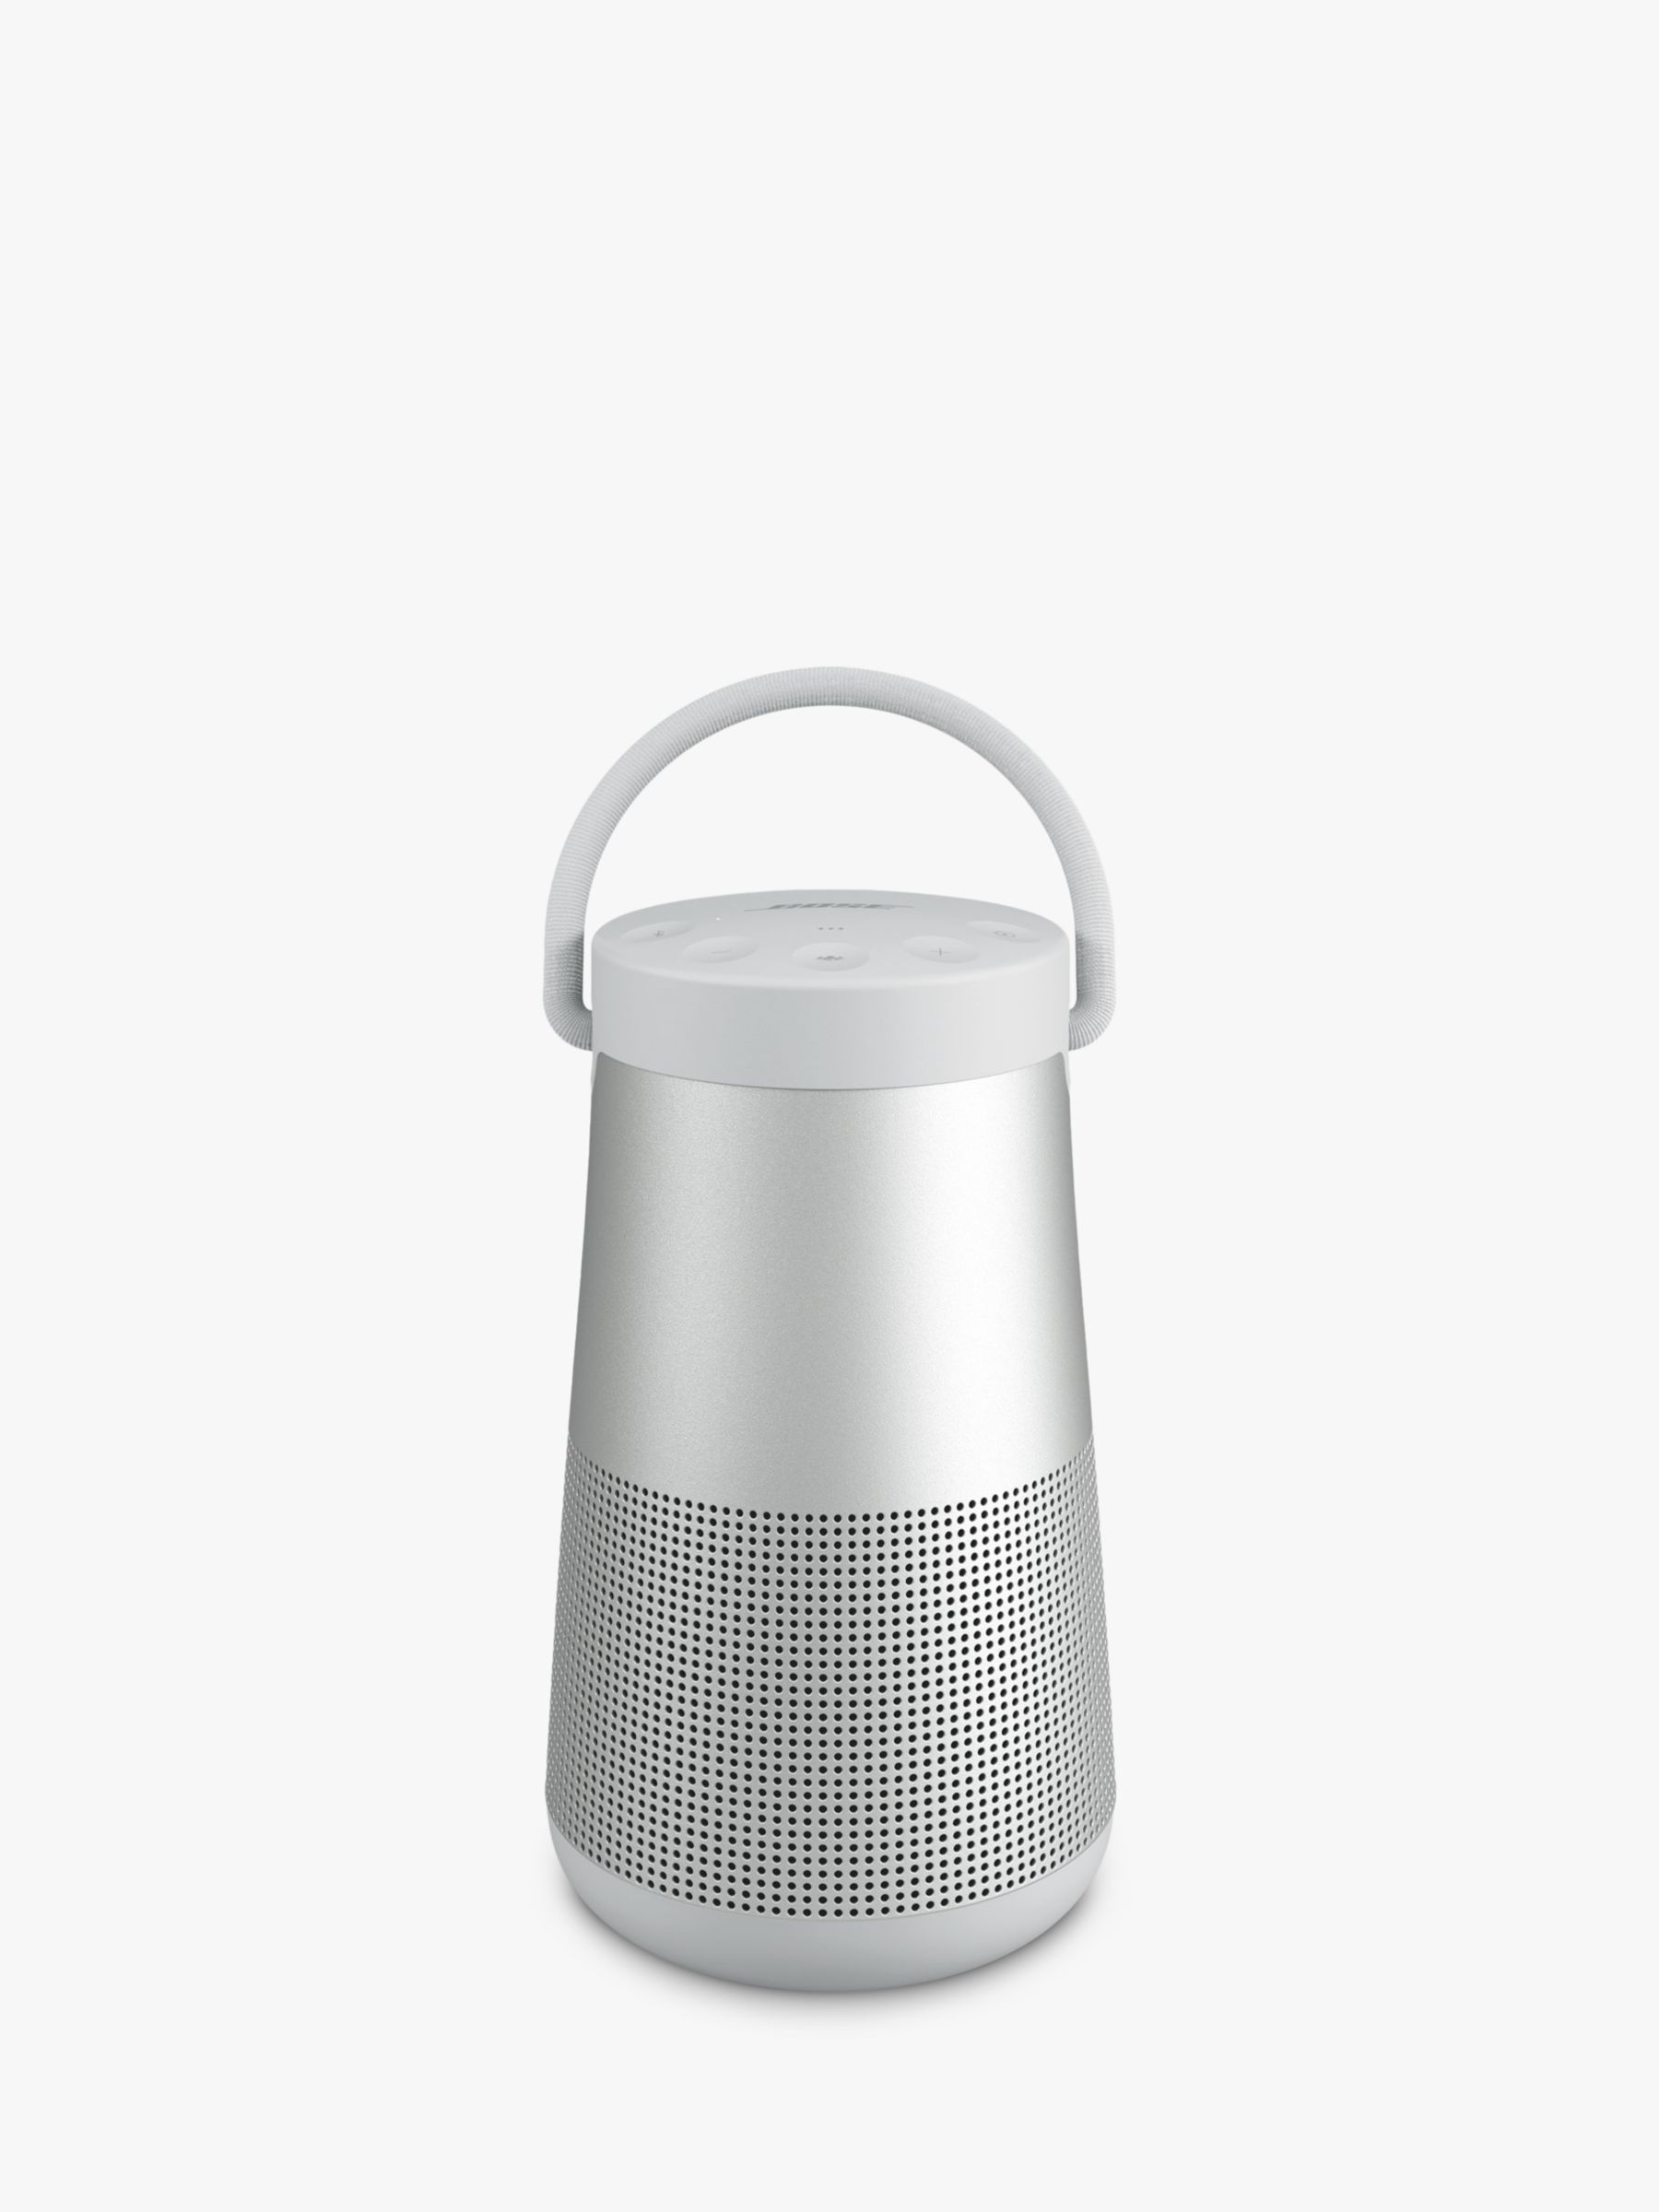 Bose Soundlink Bluetooth speaker